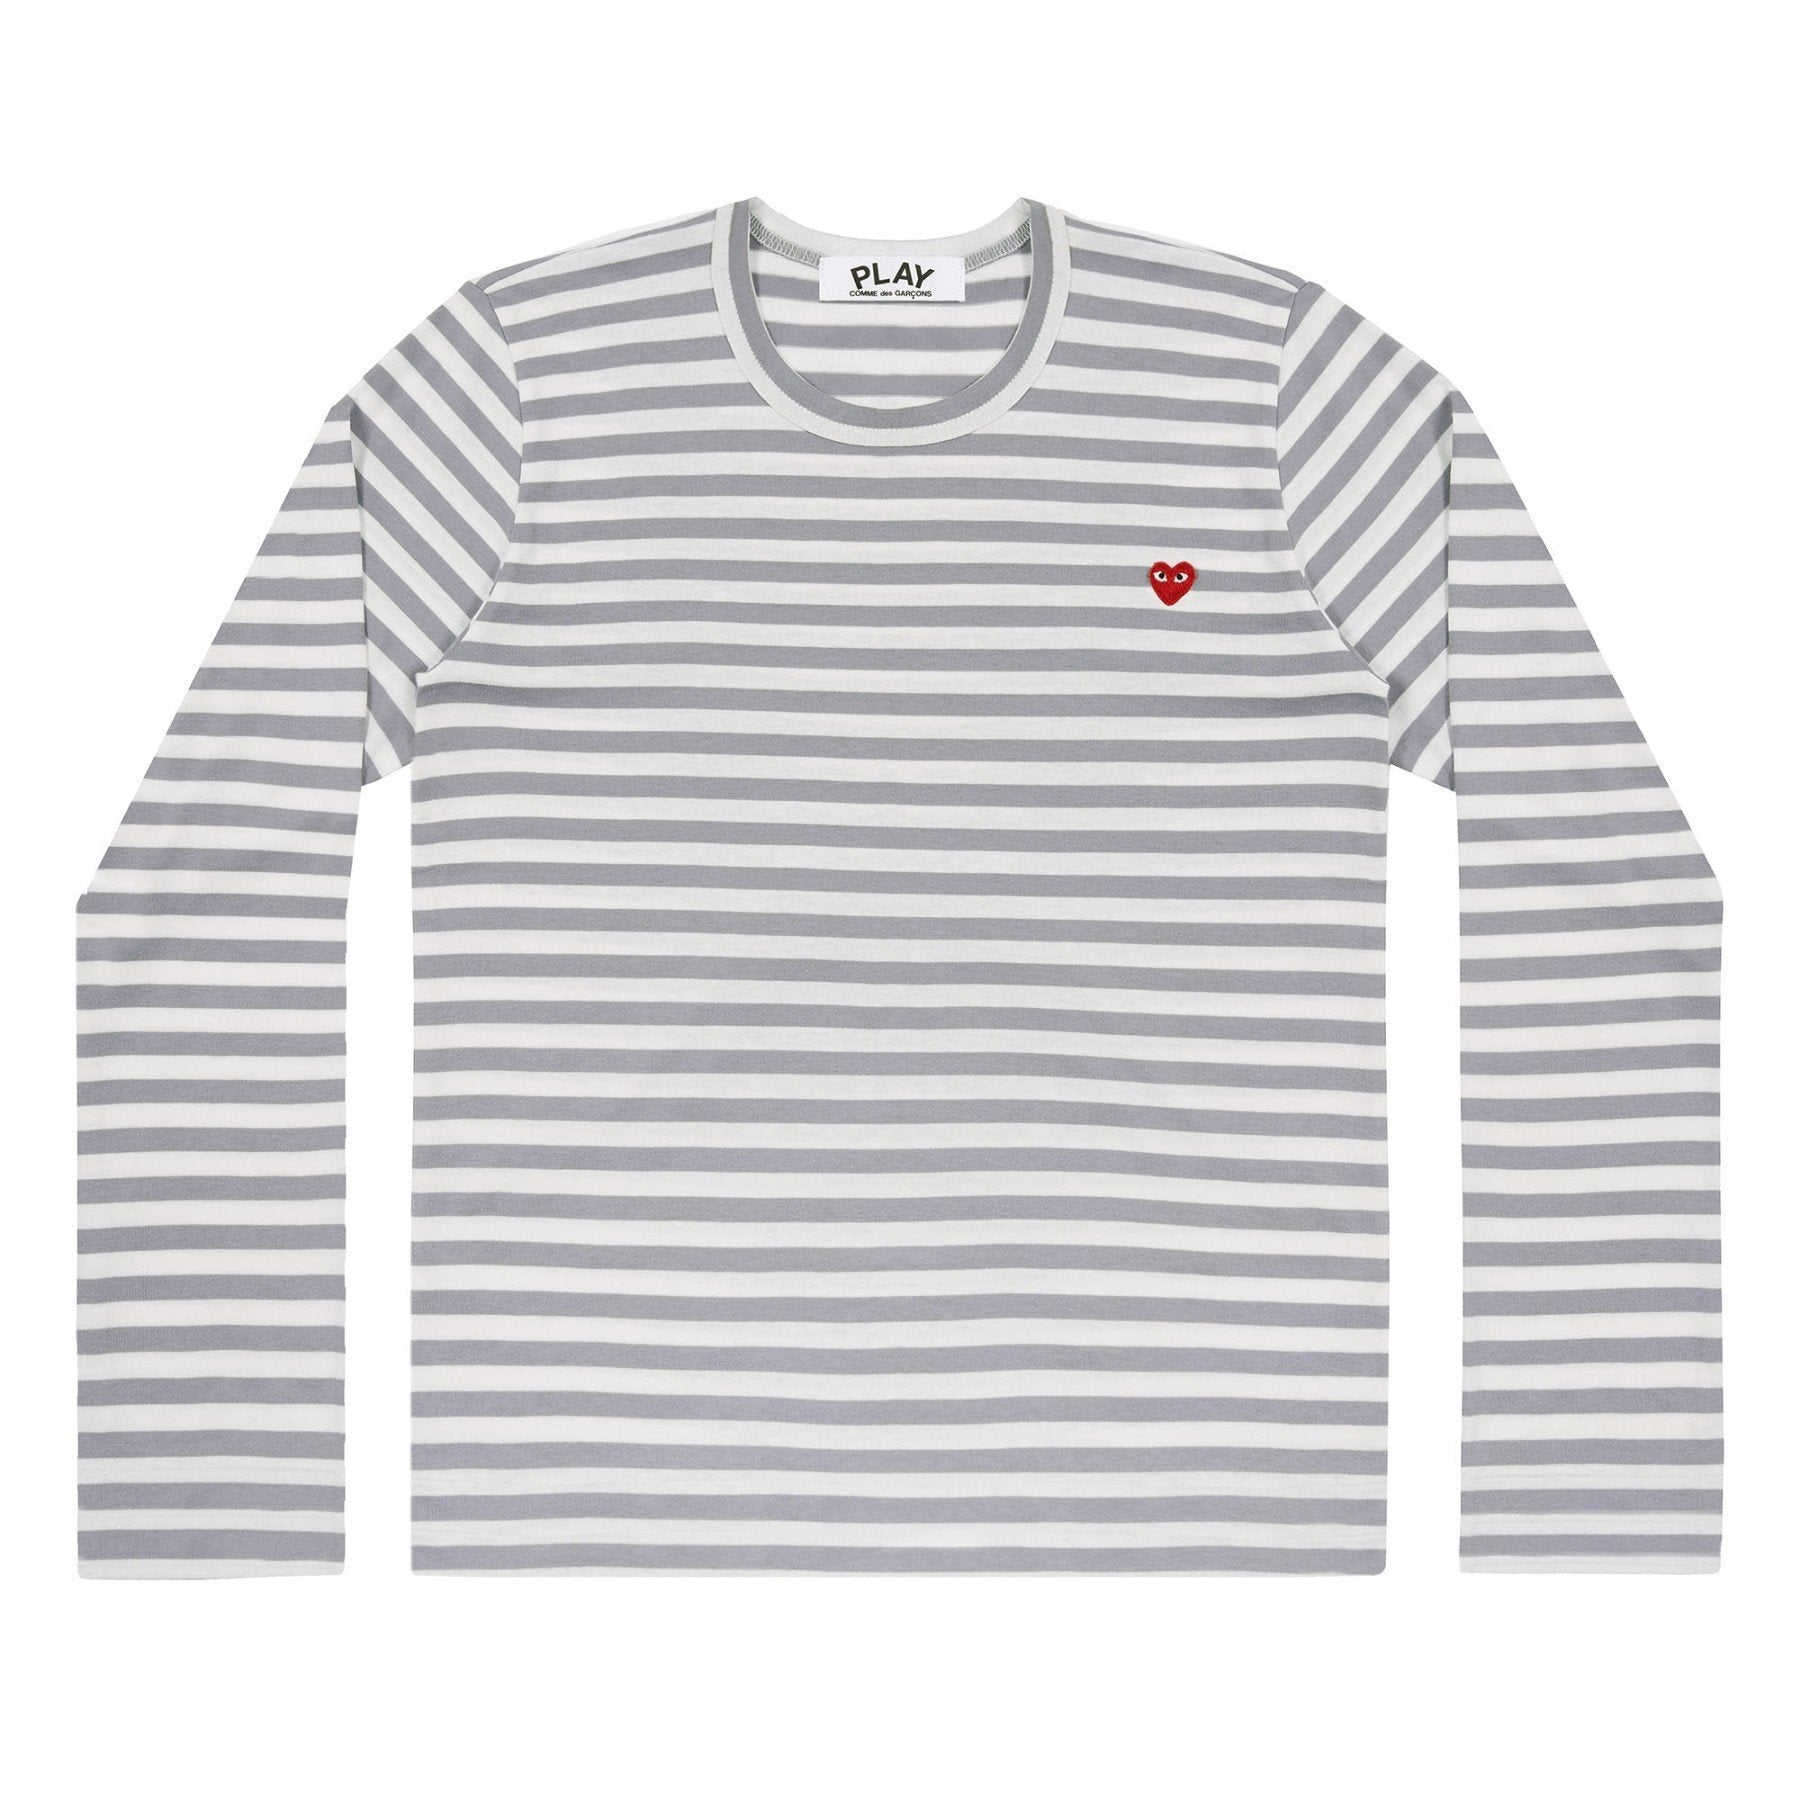 PLAY L/S Stripe Small Red Emblem (Grey)